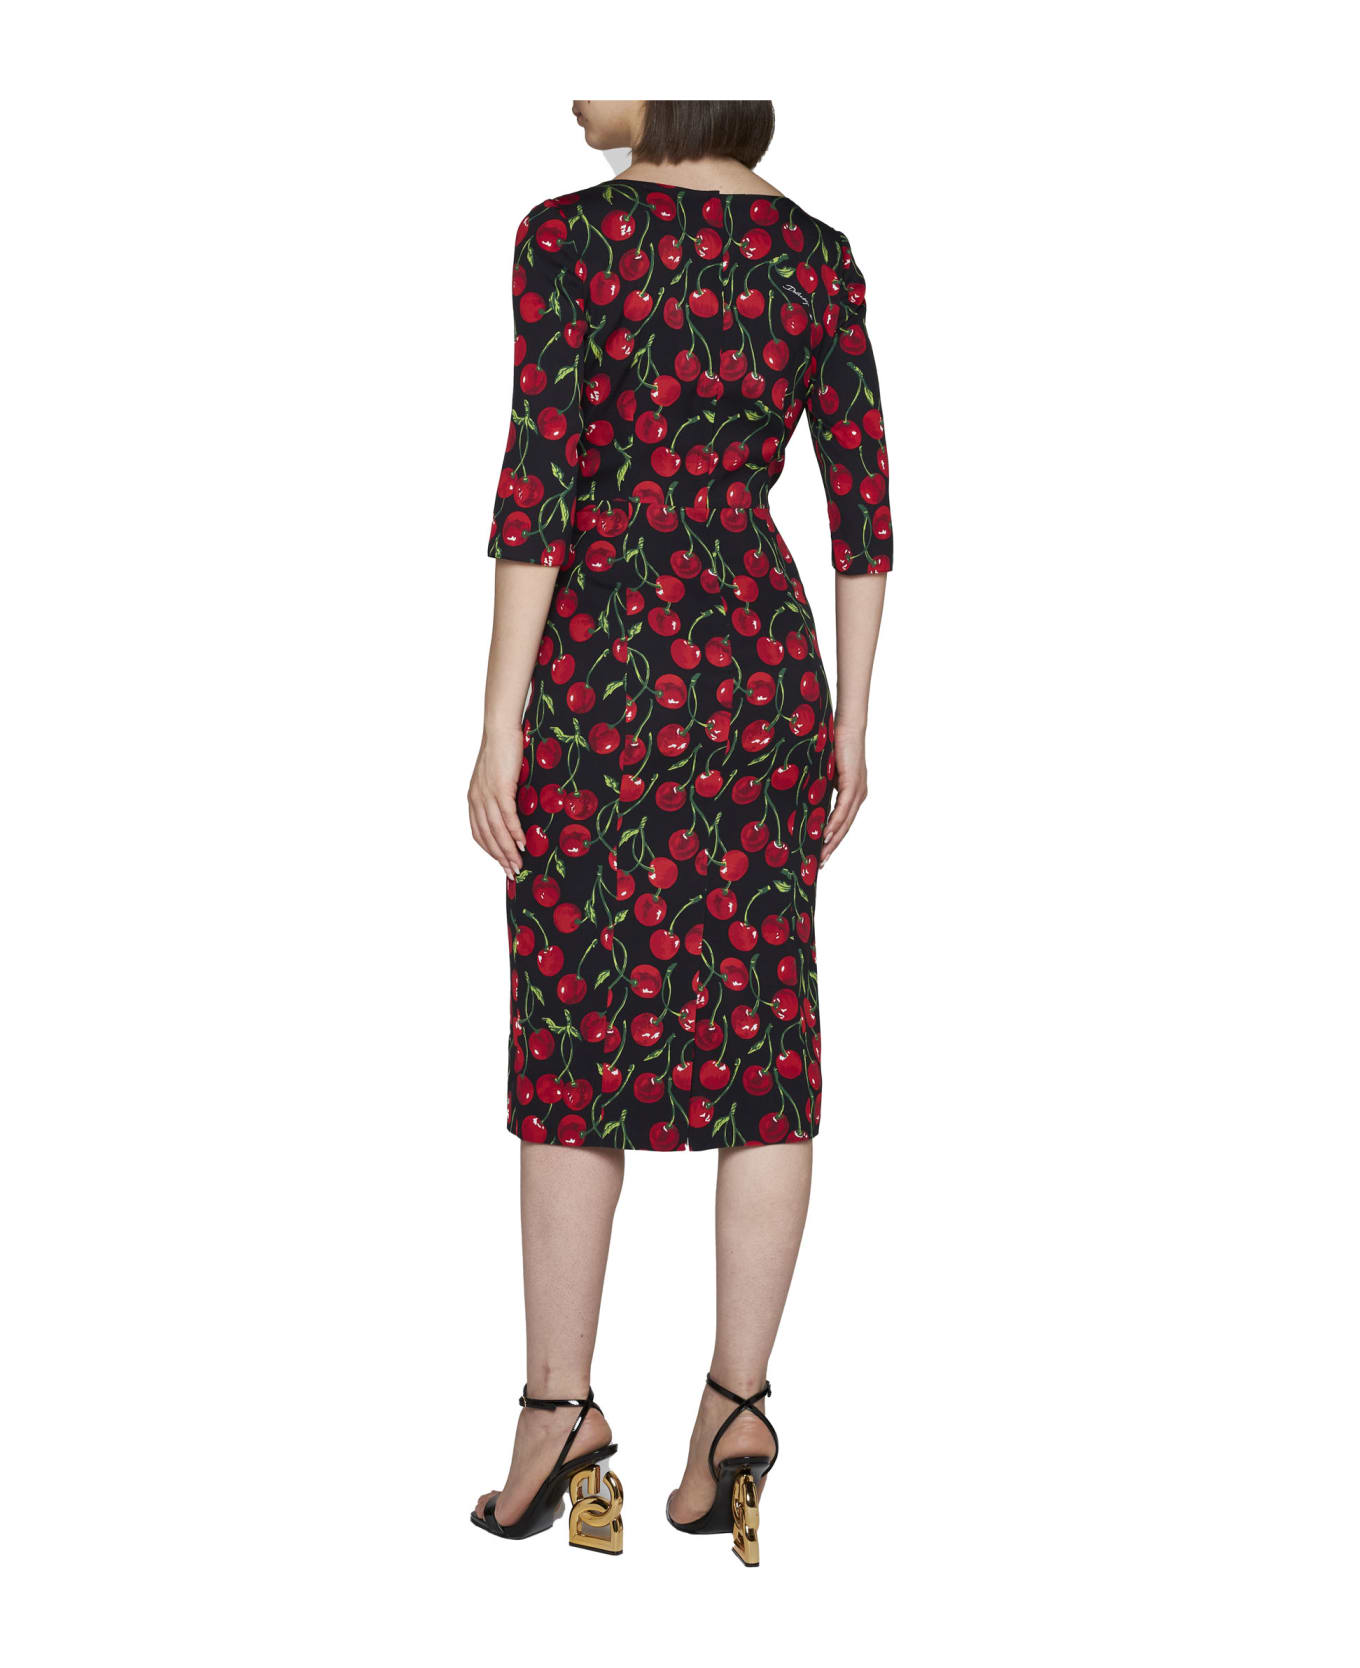 Dolce & Gabbana Cherry Print Dress - Ciliegie fdo nero